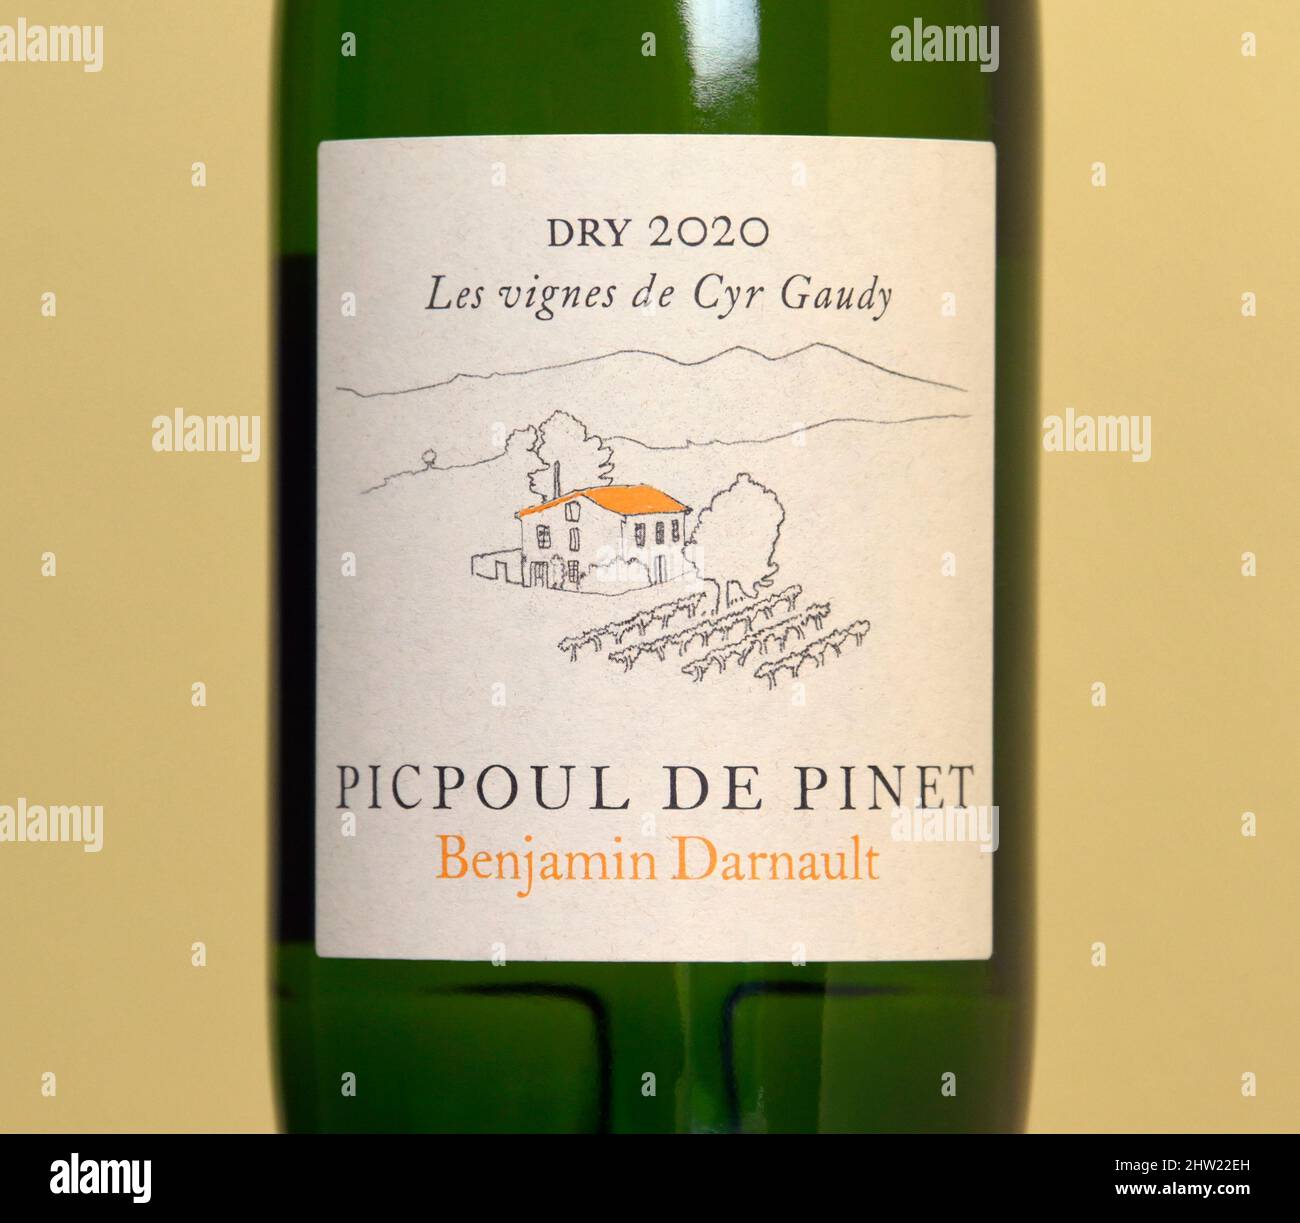 Wine label. Benjamin Darnault. Picpoul De Pinet. Dry 2020. Les vignes de Cyr Gaudy. Stock Photo